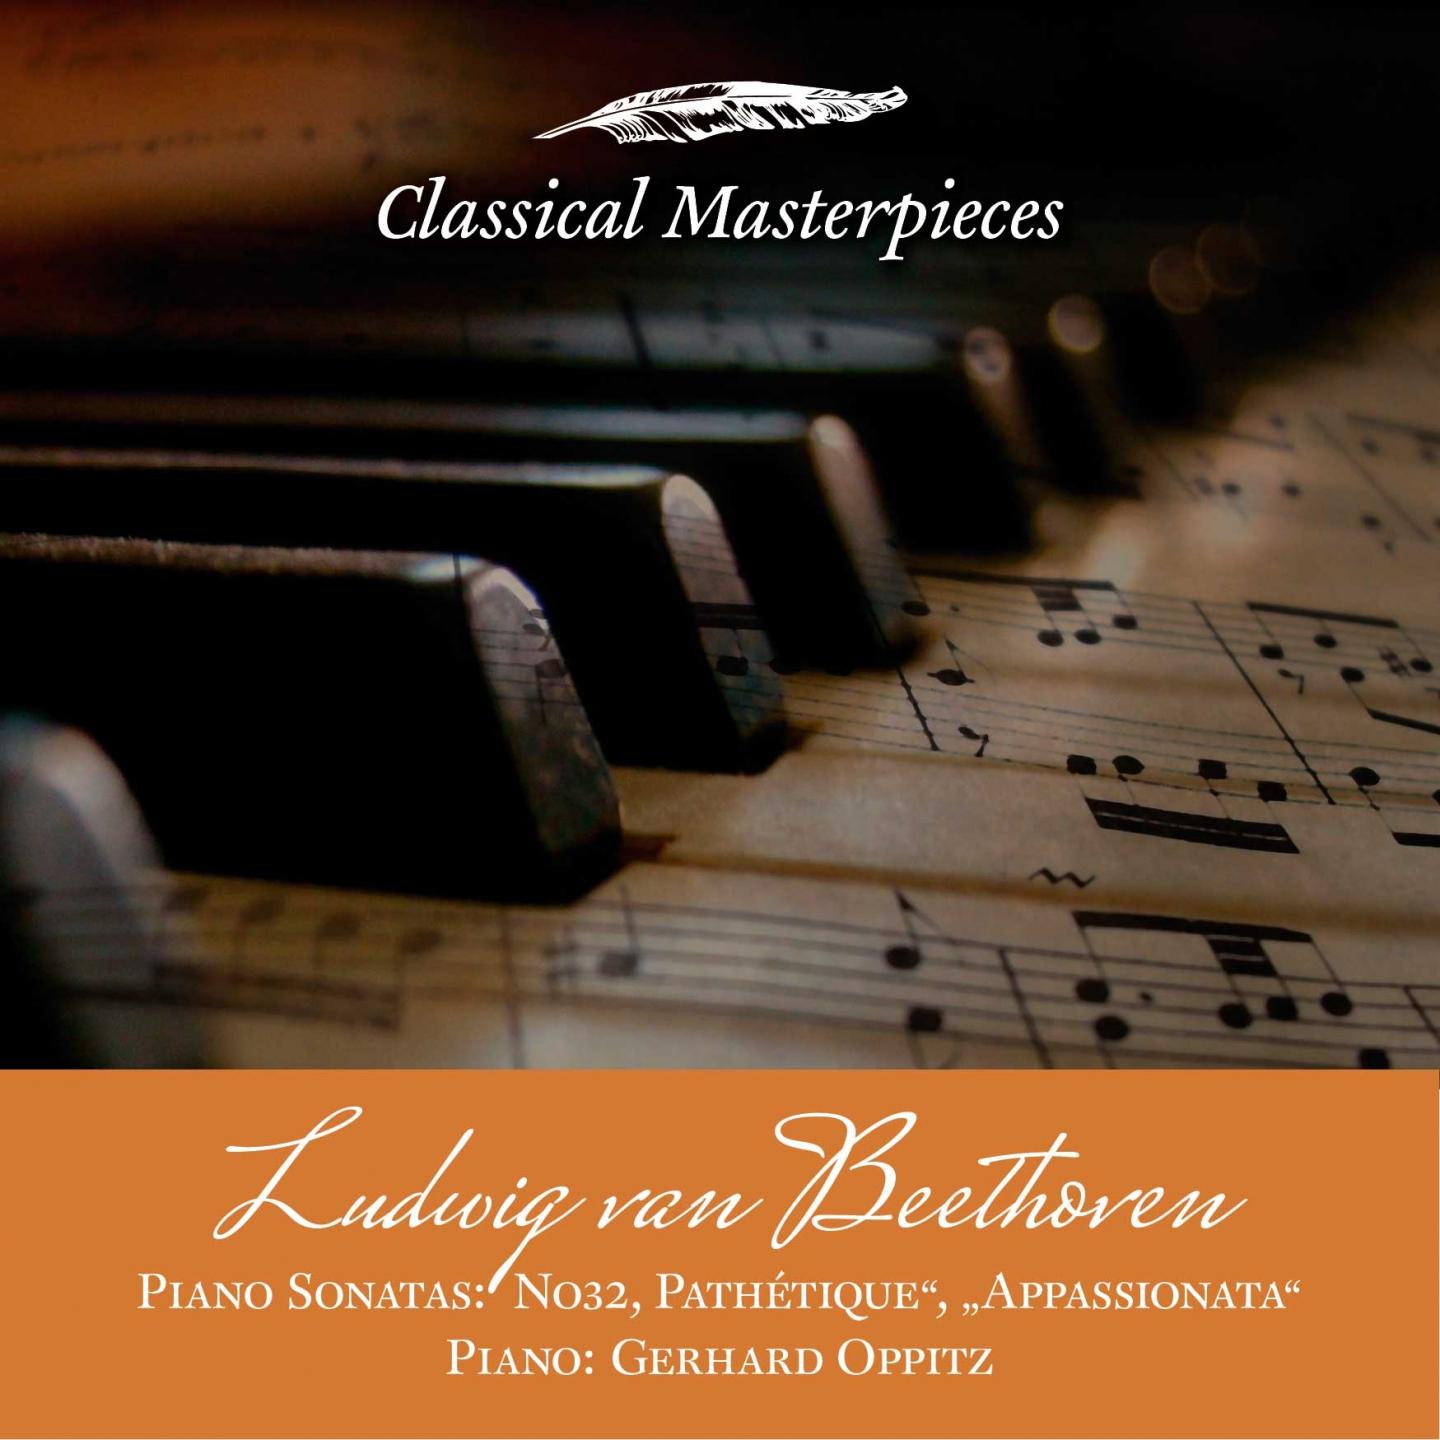 Ludwig van Beethoven Piano Sonatas No32, Pathétique", "Appassionata"